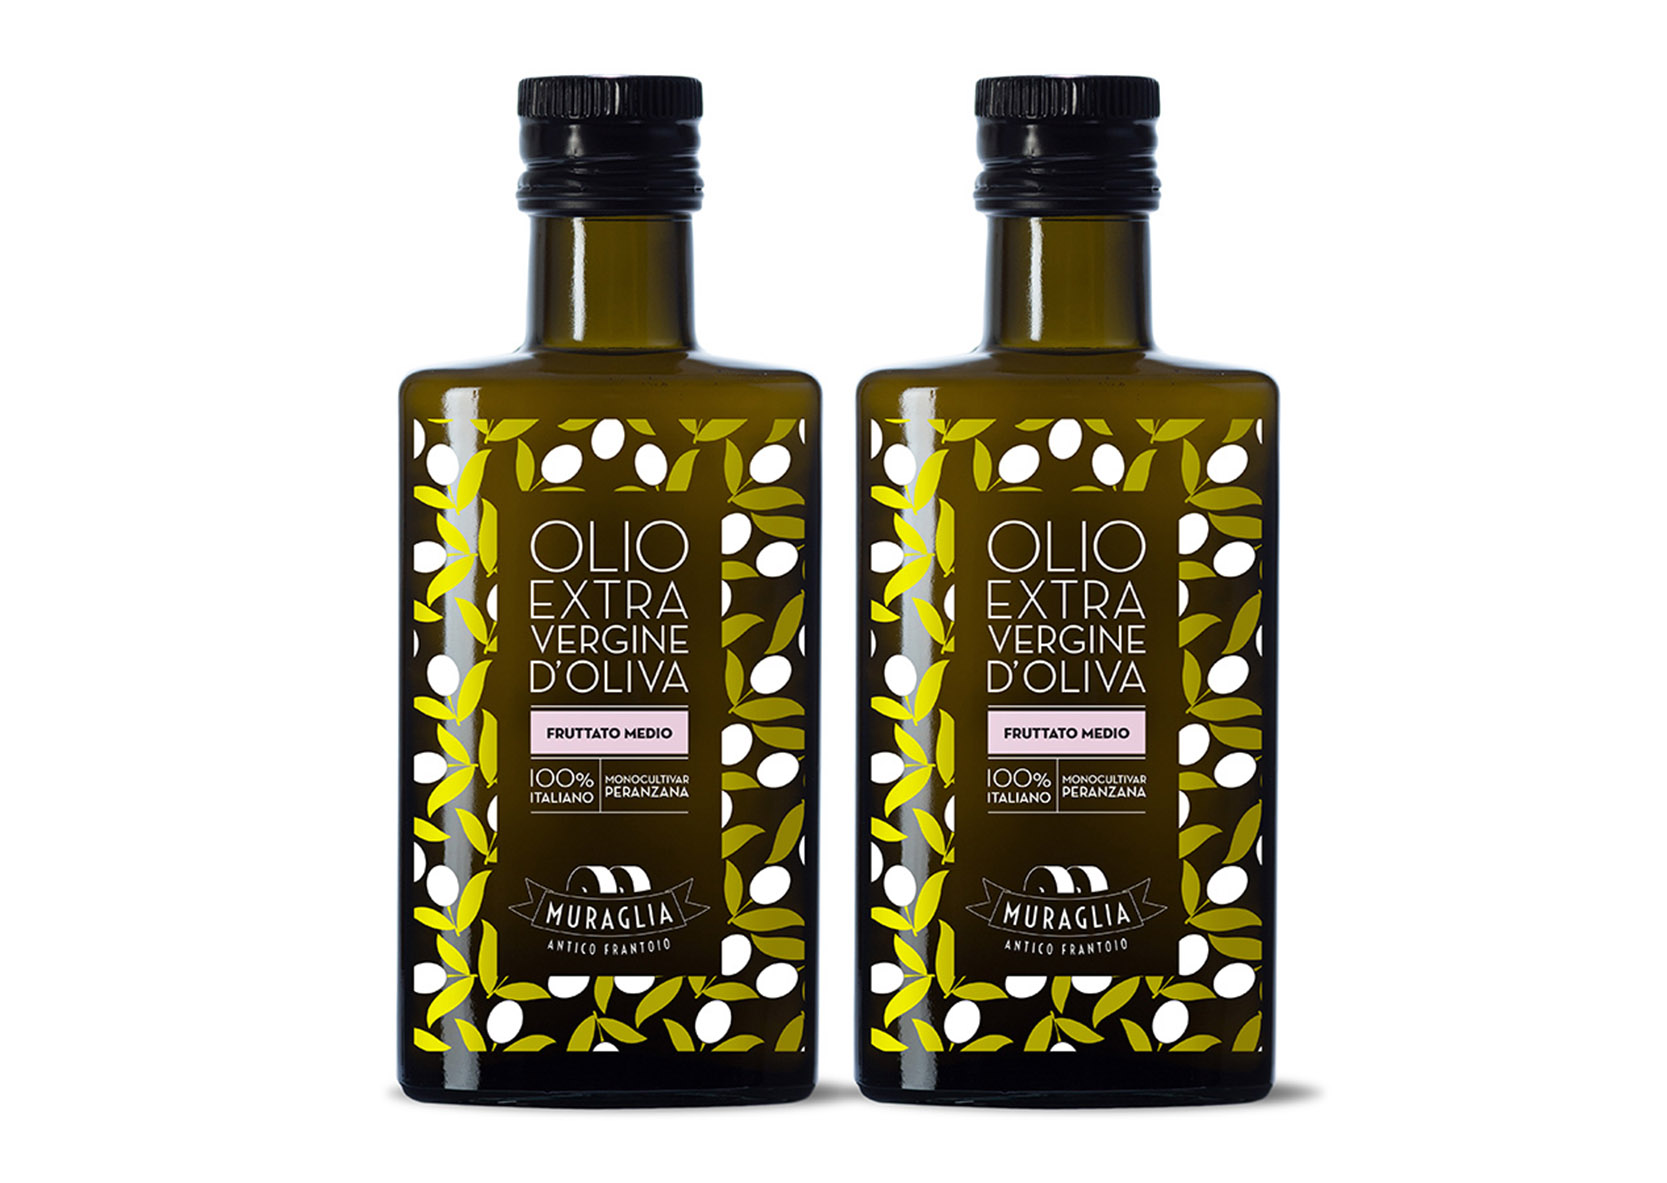 Bouteille En Verre D'huile D'olive De La Meilleure Qualité Et D'olives  Mûres Avec Une Branche D'isolement Image stock - Image du santé, bouteille:  64073529